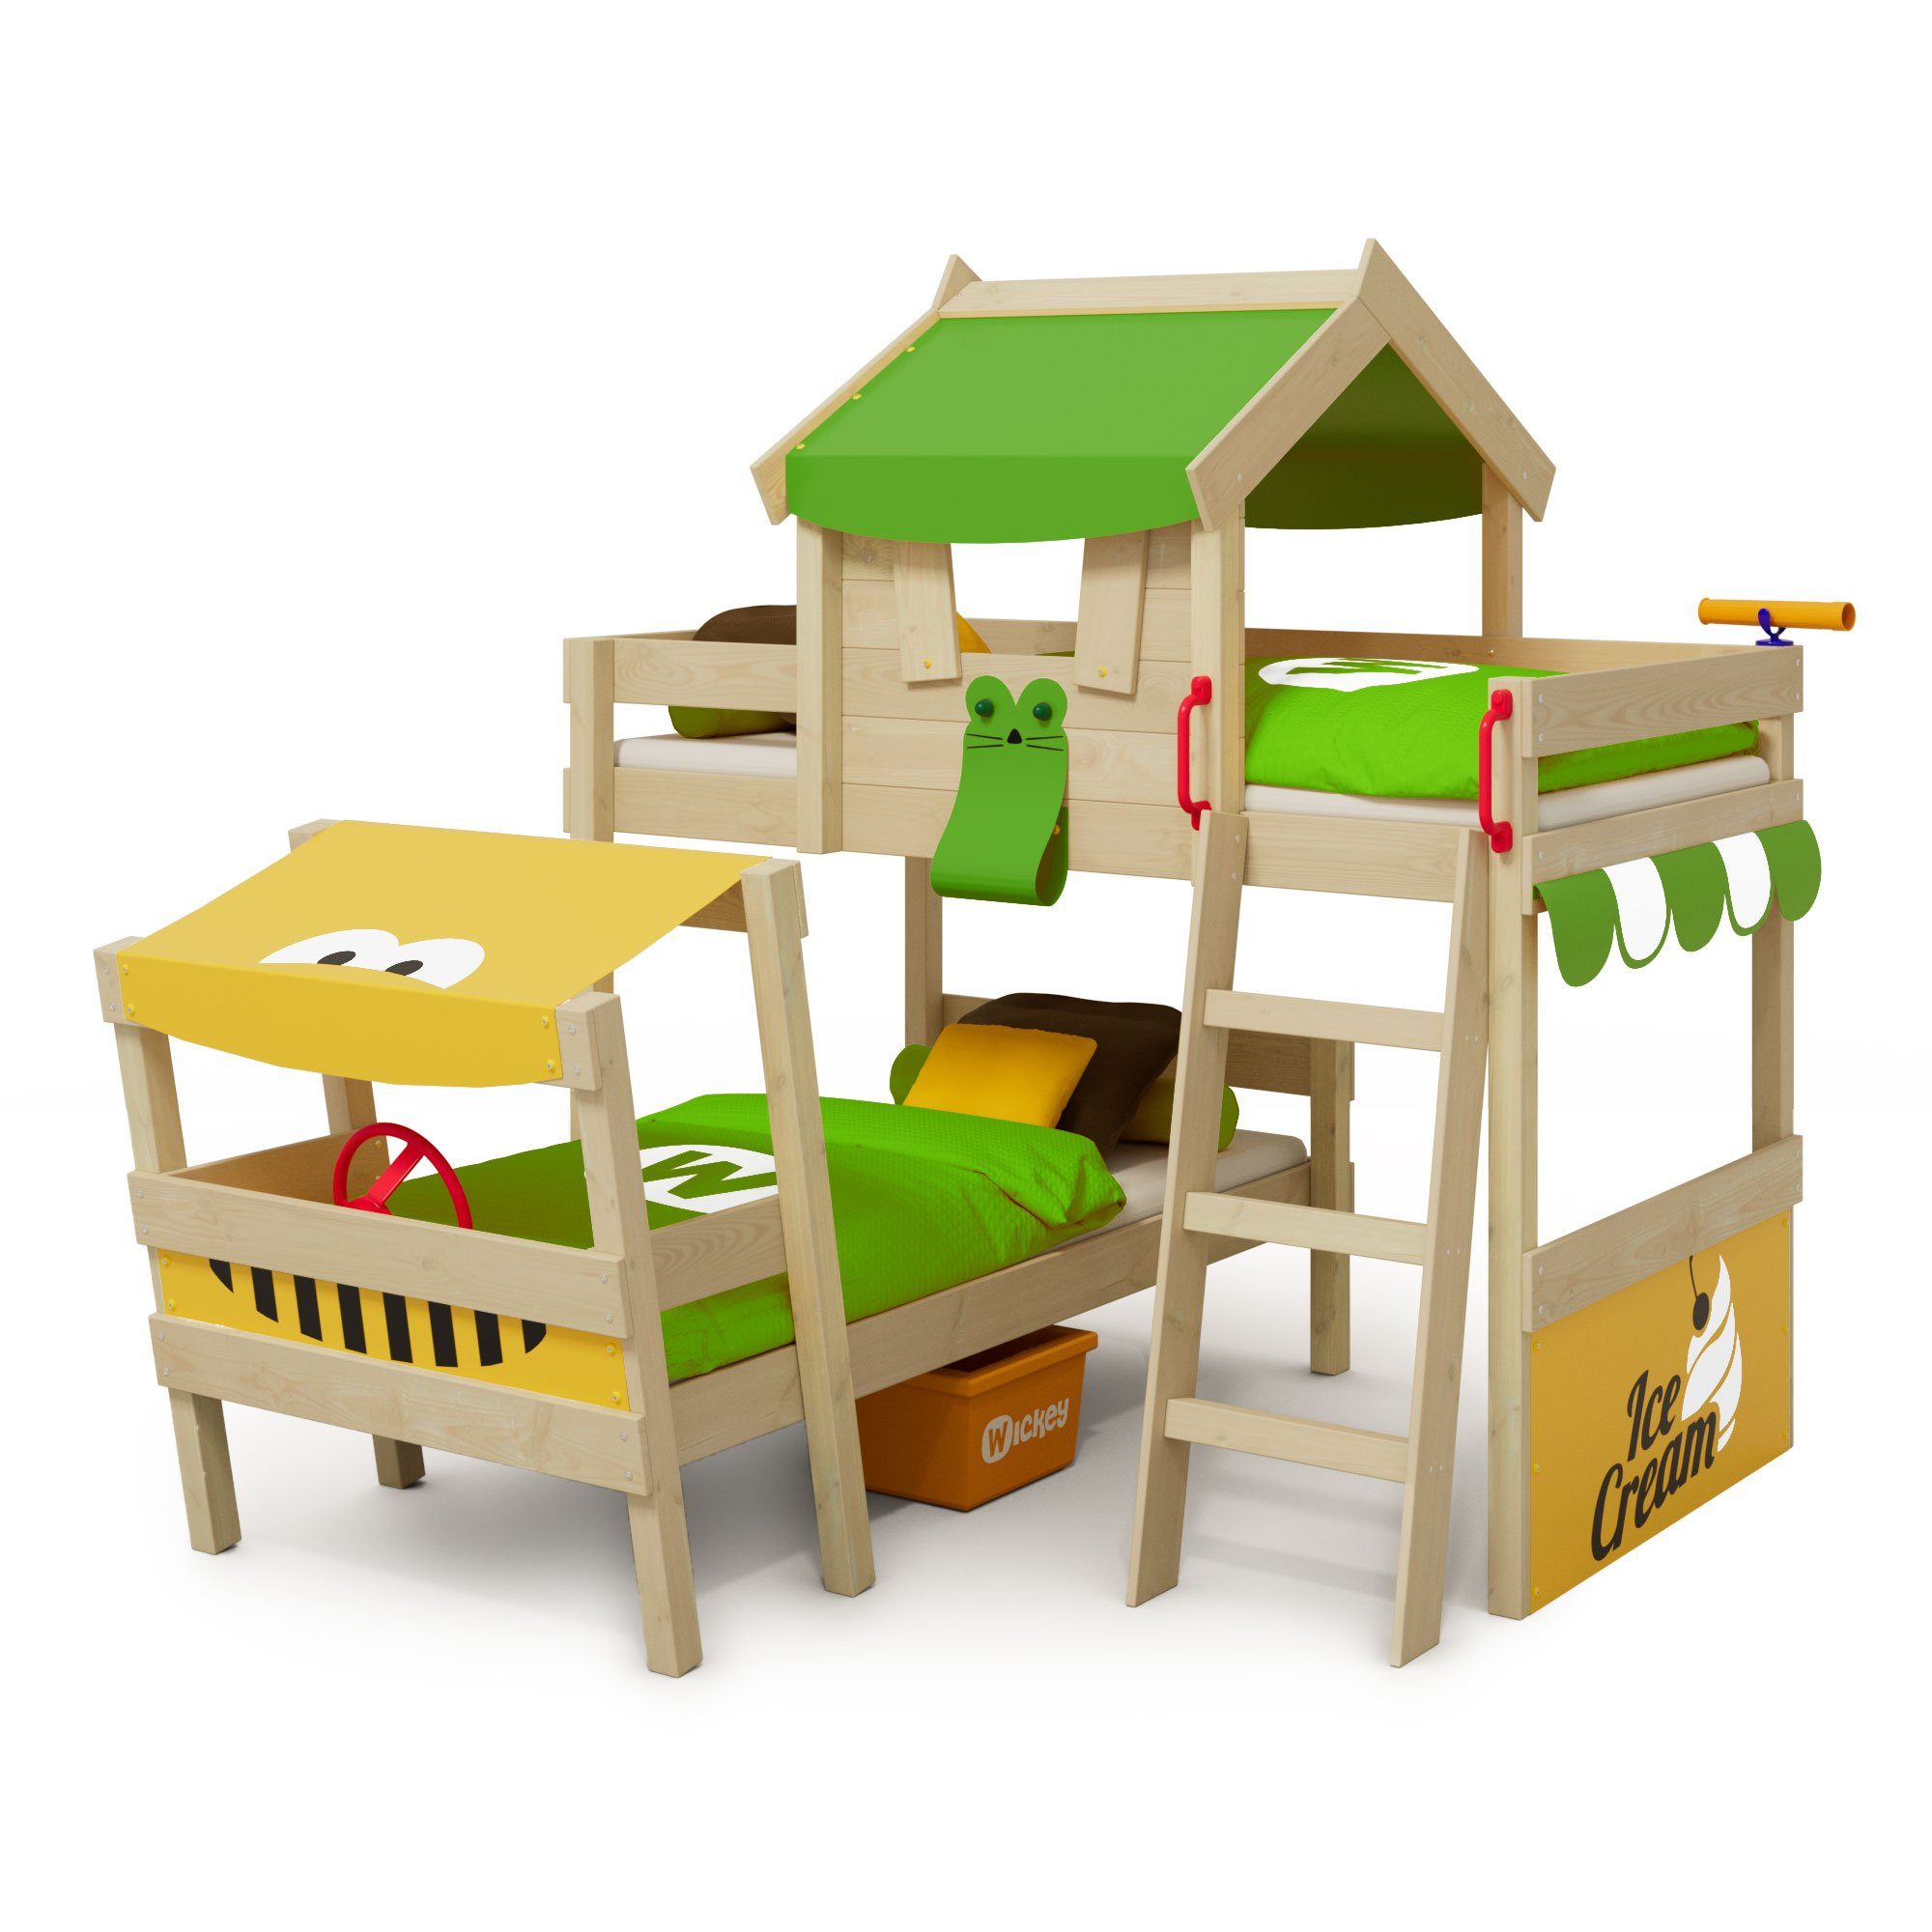 Wickey Kinderbett Crazy Trunky - Spielbett, 90 x 200 cm Hochbett (Holzpaket aus Pfosten und Brettern, Spielbett für Kinder), Massivholzbrett apfelgrün/gelb